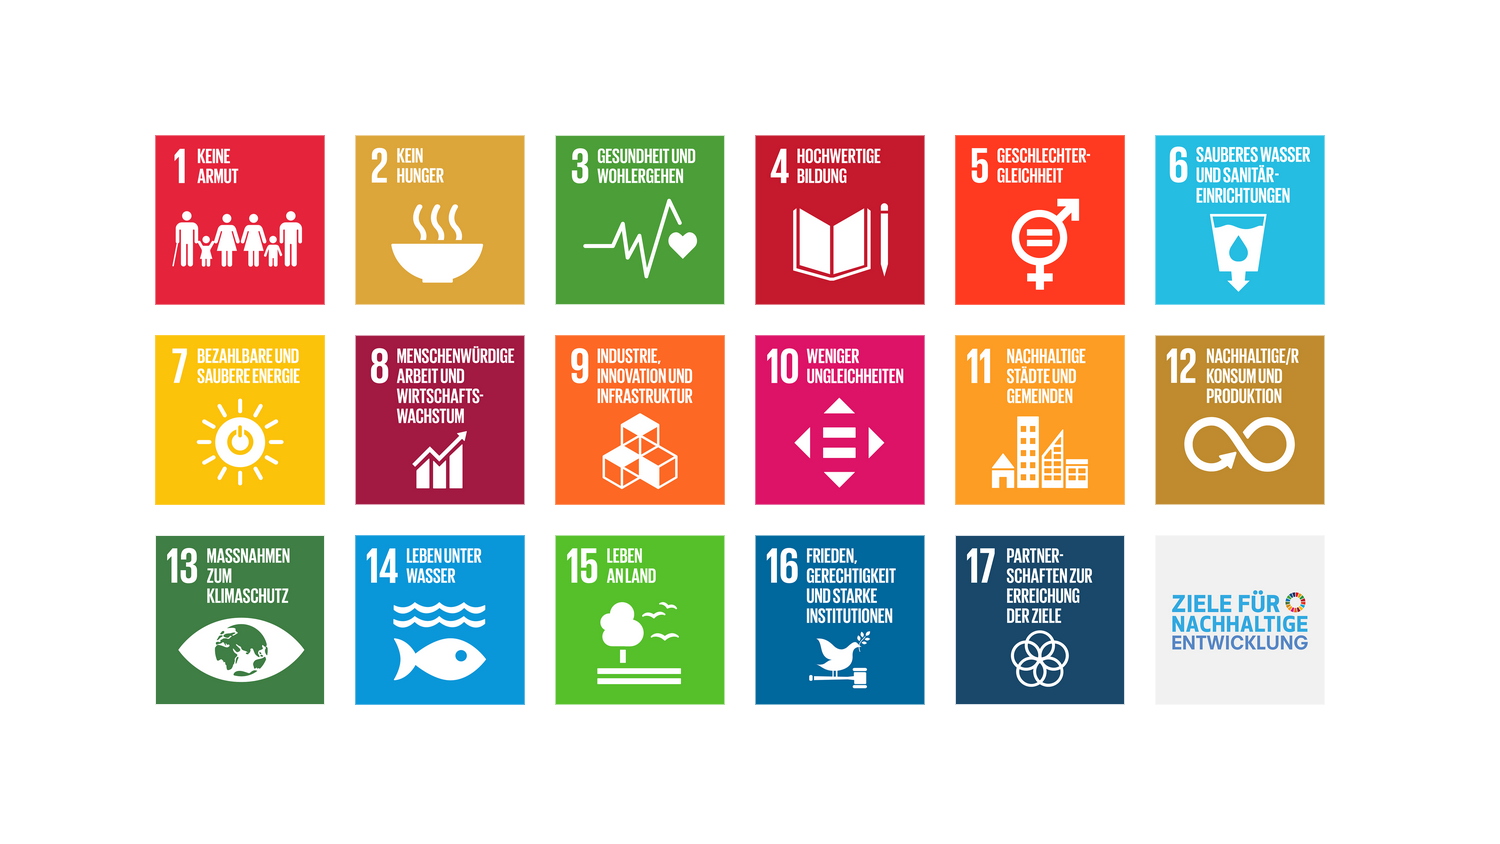 Abbildung 1: Die 17 Ziele der Agenda 2030 für nachhaltige Entwicklung der Vereinten Nationen. 17 Logos mit Piktogrammen der einzelnen Ziele, ein weiteres Logo mit dem Text "Ziele für nachhaltige Entwicklung"